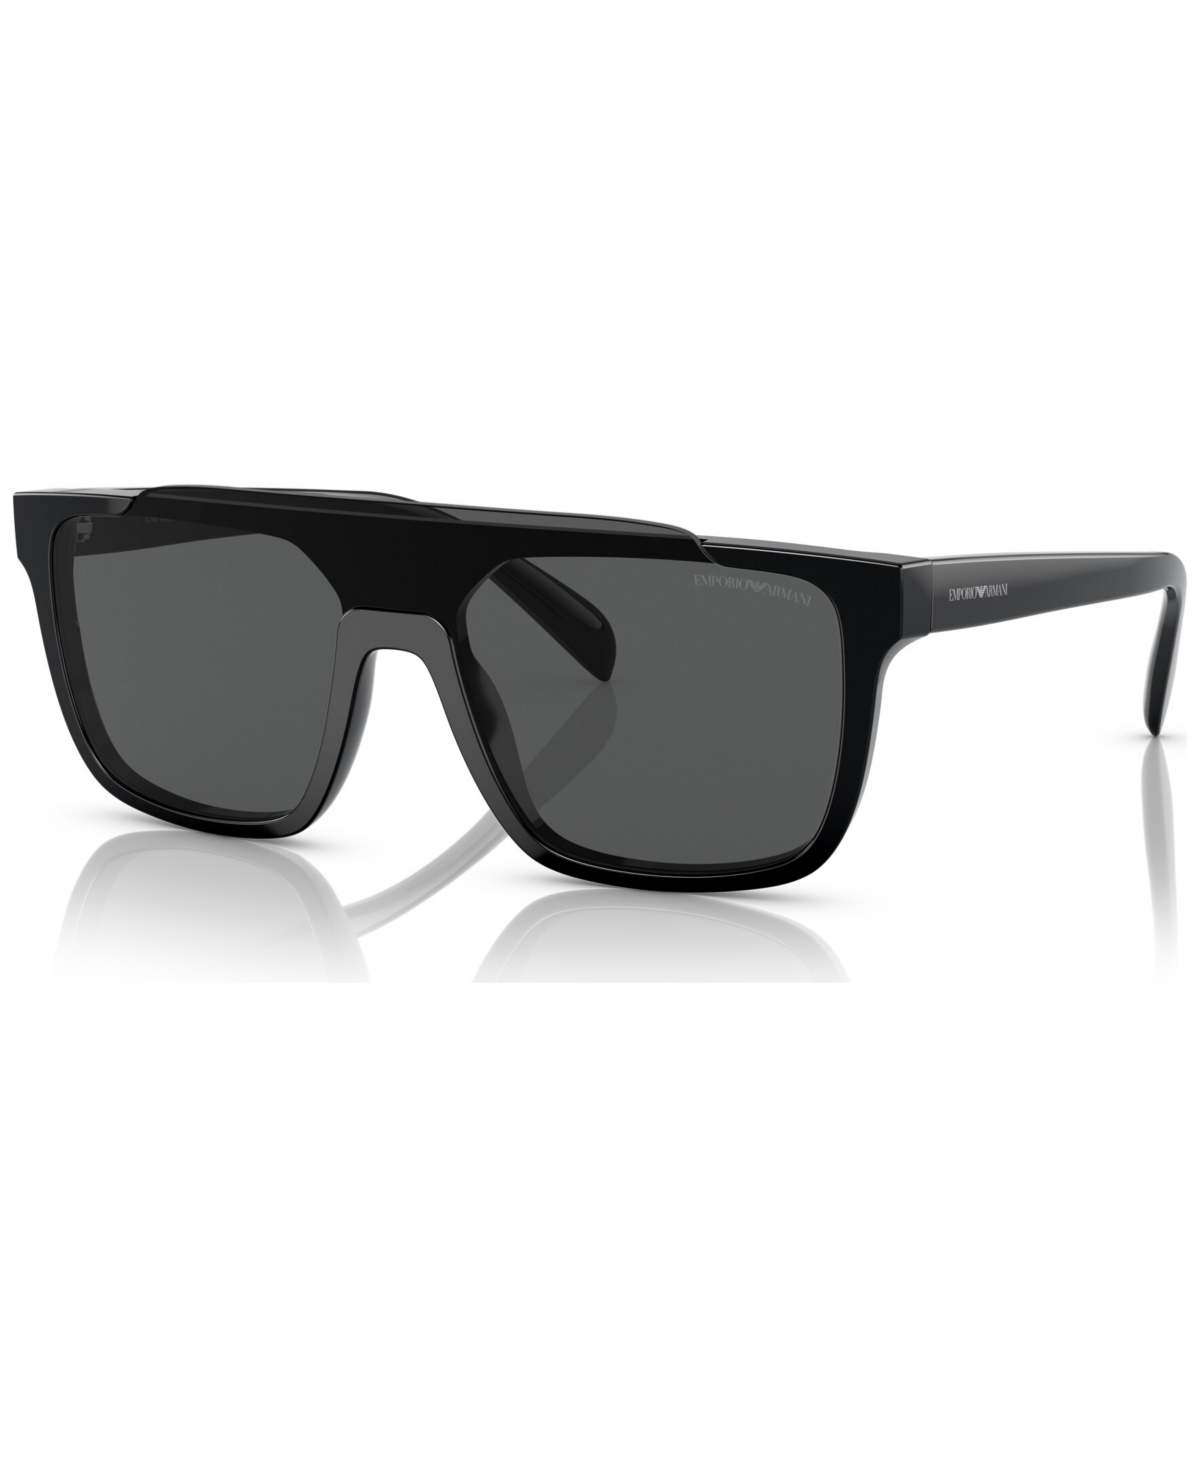 Emporio Armani Men's Sunglasses, Ea419331 In Shiny Black